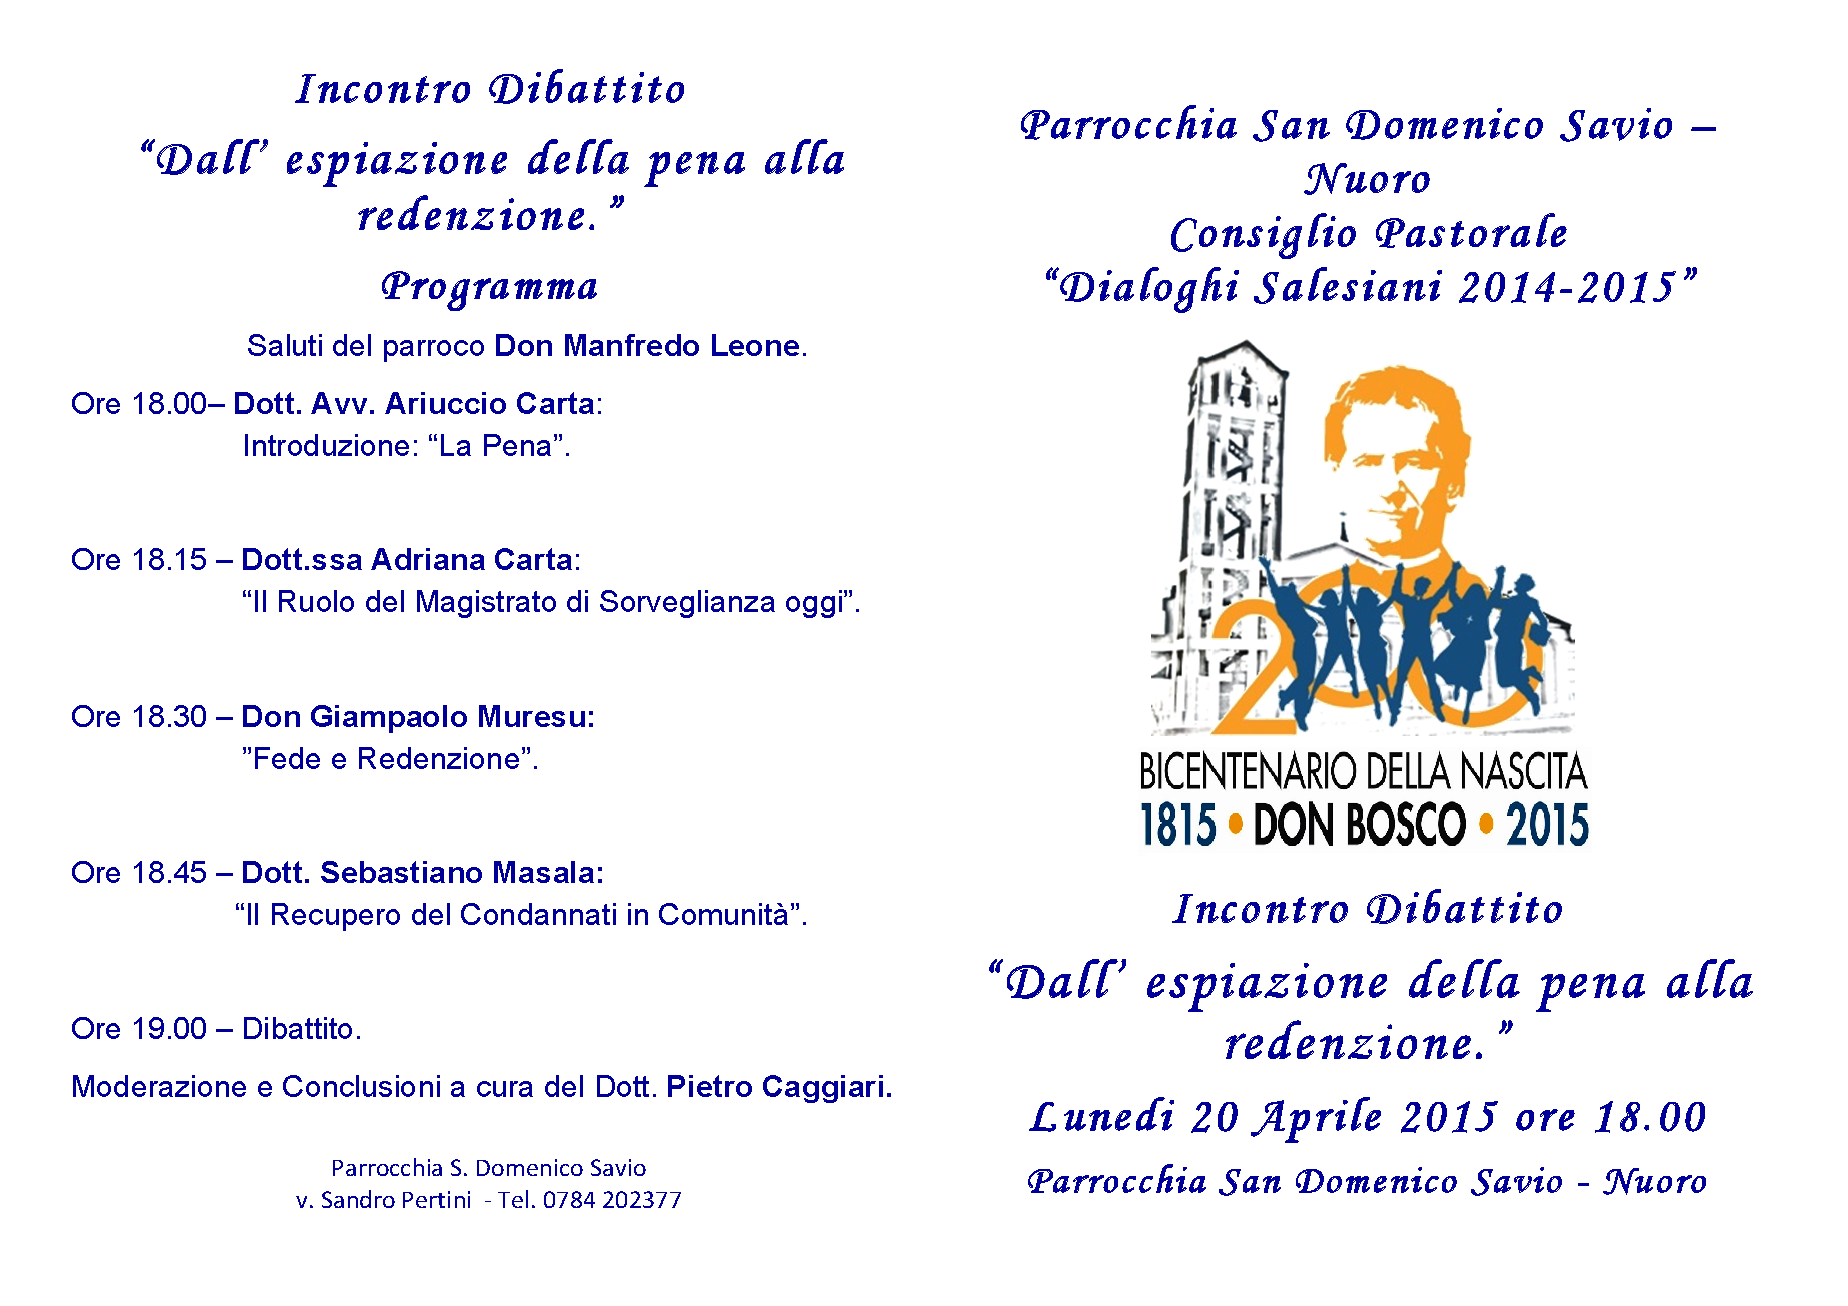 Dall'espiazione della pena alla redenzione: un incontro dibattito alla Parr. S. Domenico Savio